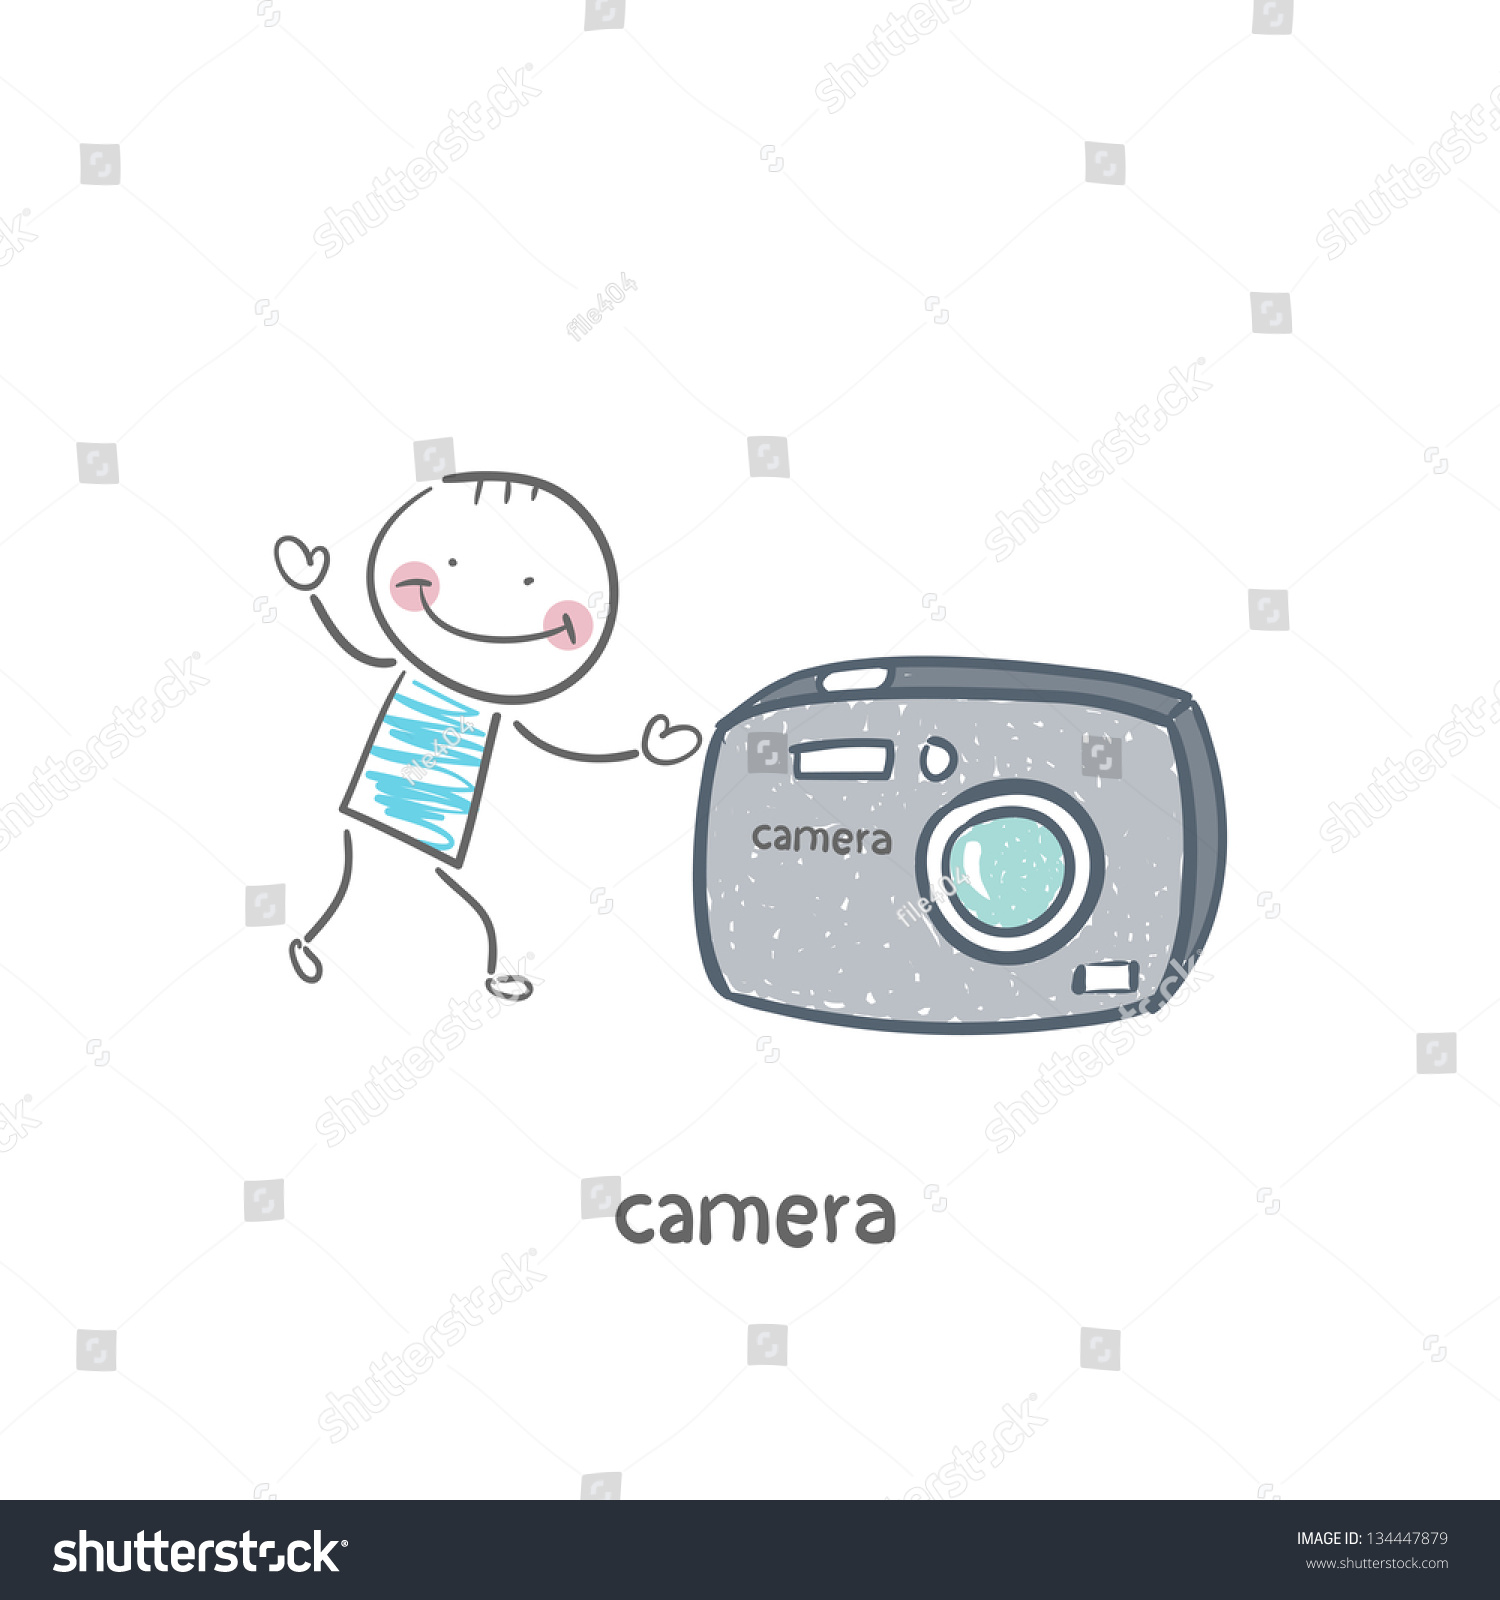 Camera Stock Vector Illustration 134447879 : Shutterstock